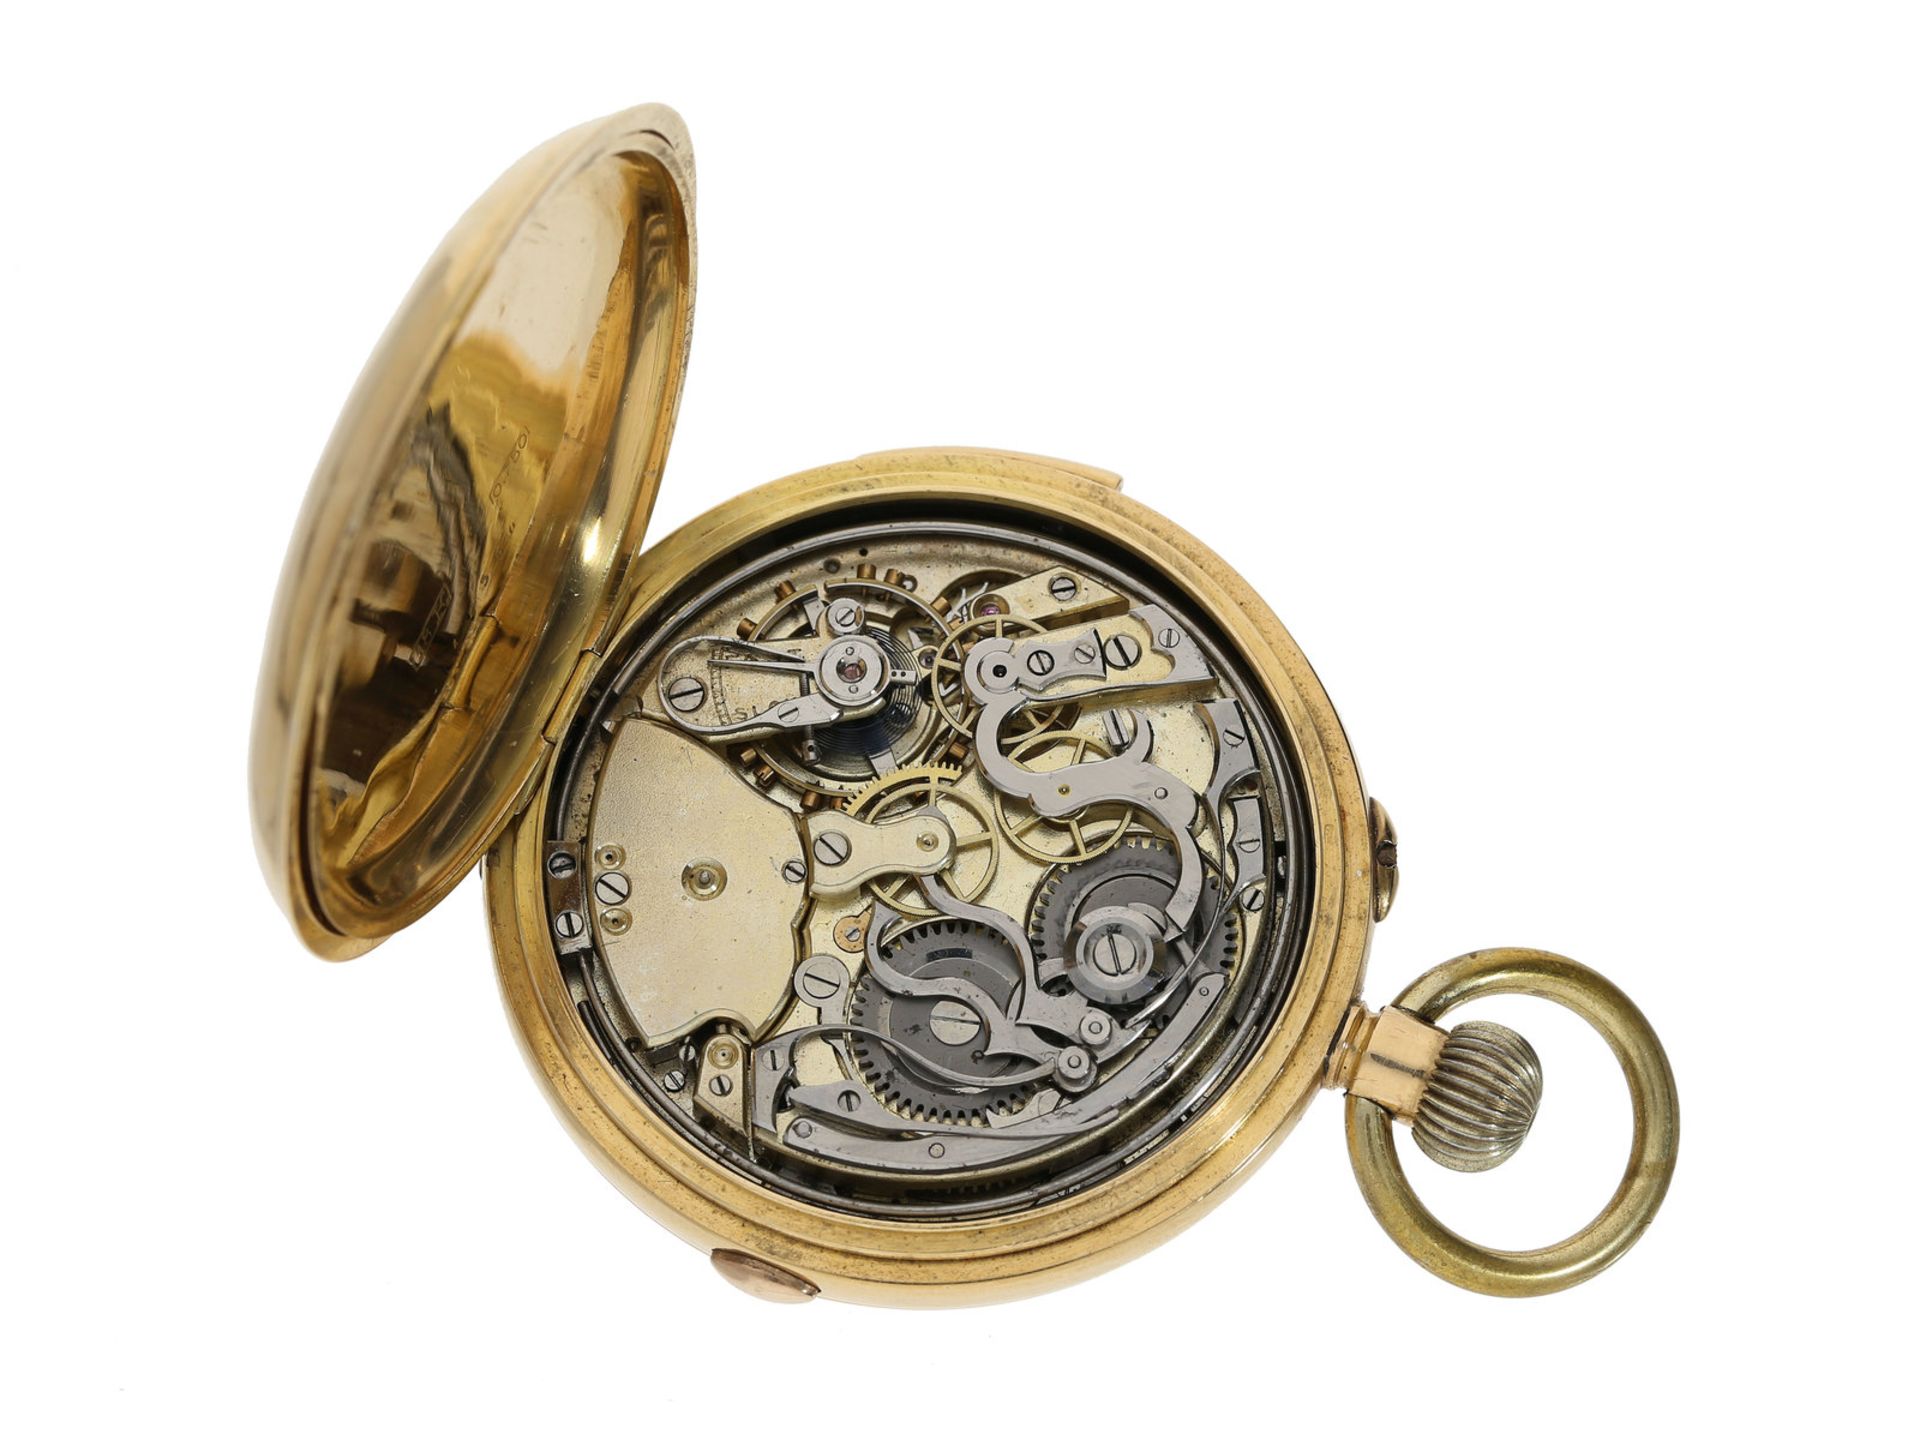 Taschenuhr: hochwertige 18K Goldsavonnette mit Repetition und Chronograph, signiert J.W. Benson - Bild 3 aus 3